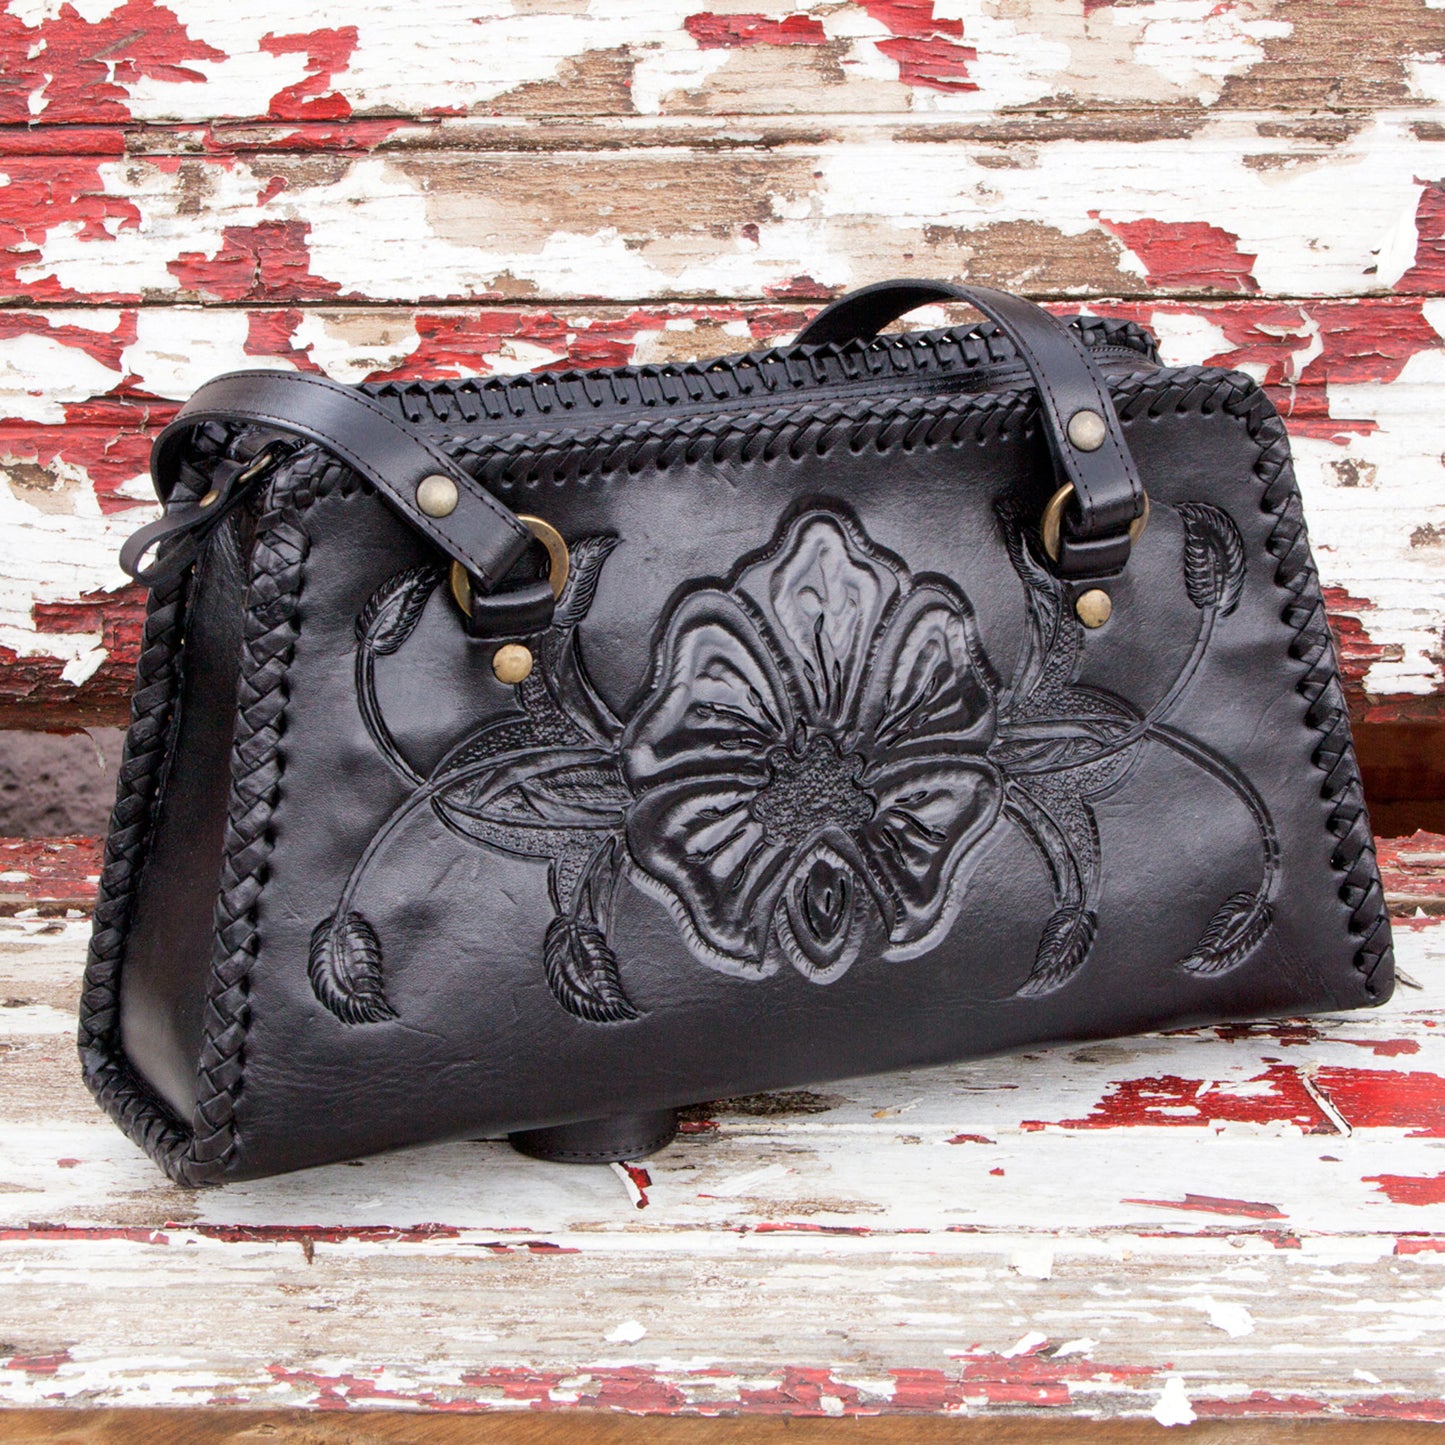 'Midnight Rose' Handcrafted Floral Leather Shoulder Bag